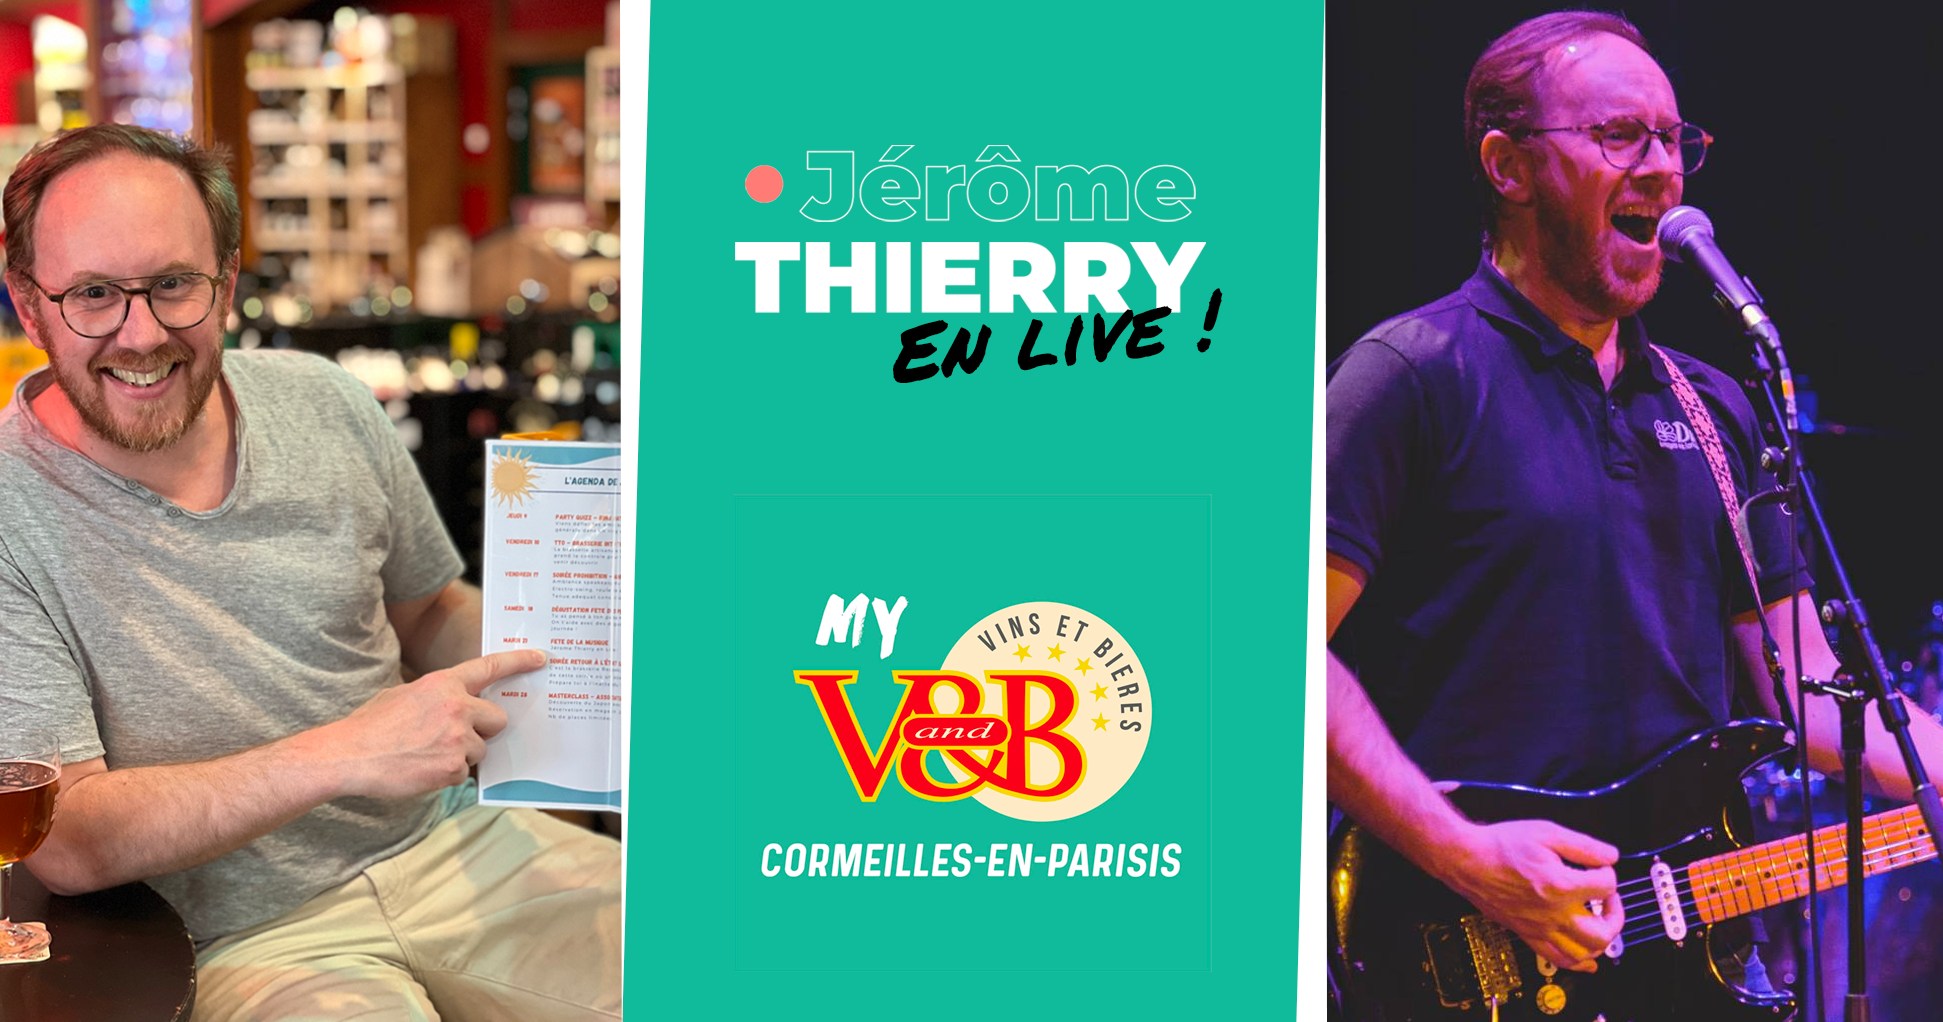 Jérôme THIERRY en live au V1B de Cormeilles-en-Parisis